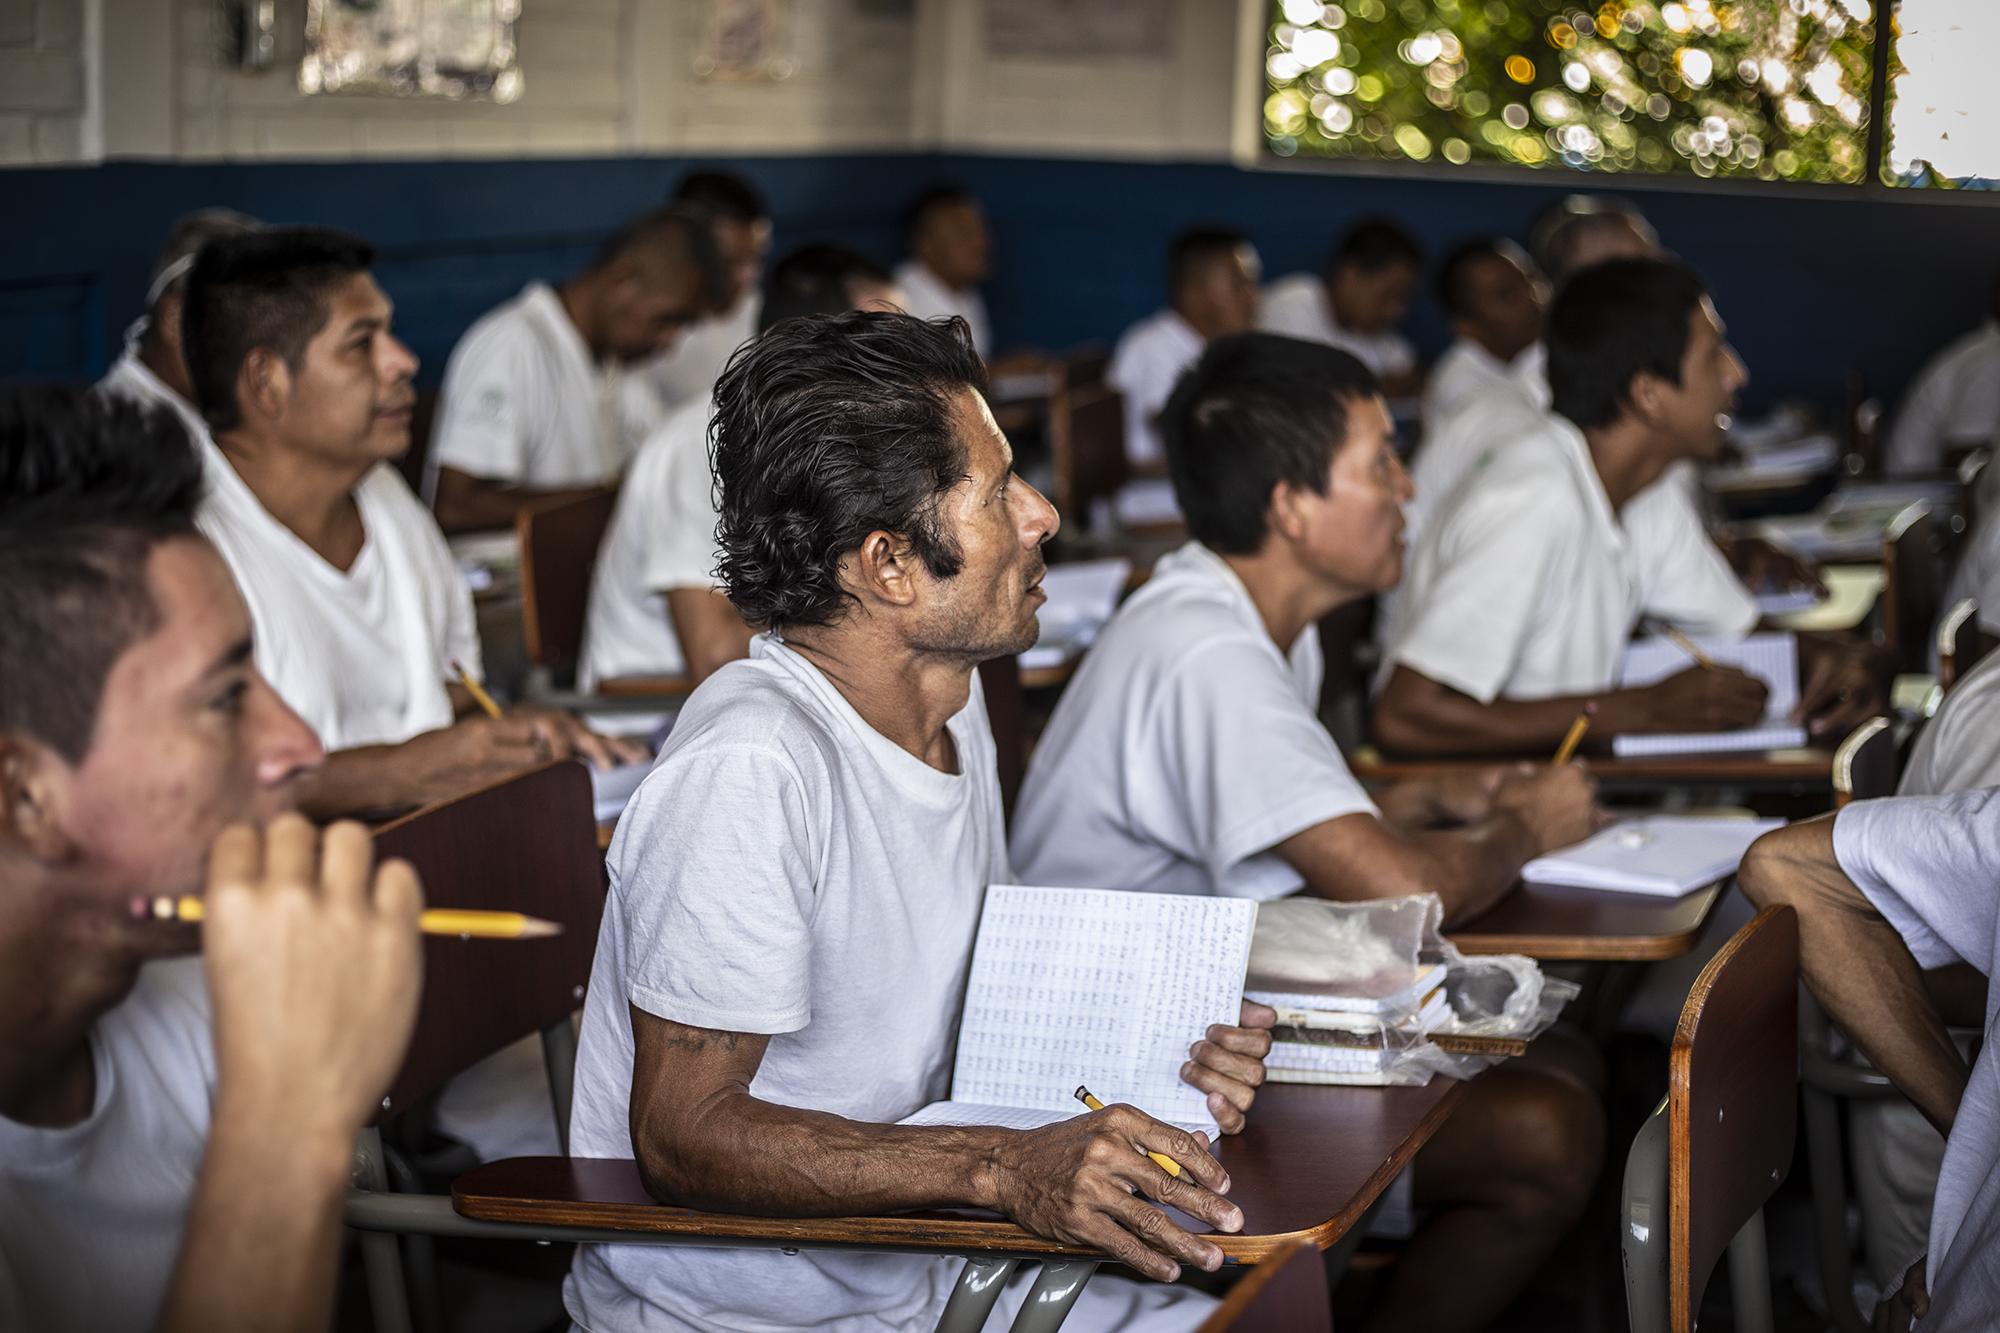 Reos matriculados en segundo grado reciben sus clases uniformados de blanco en el Centro Escolar General Francisco Menéndez, ubicado dentro de la cárcel. Foto Carlos Barrera.